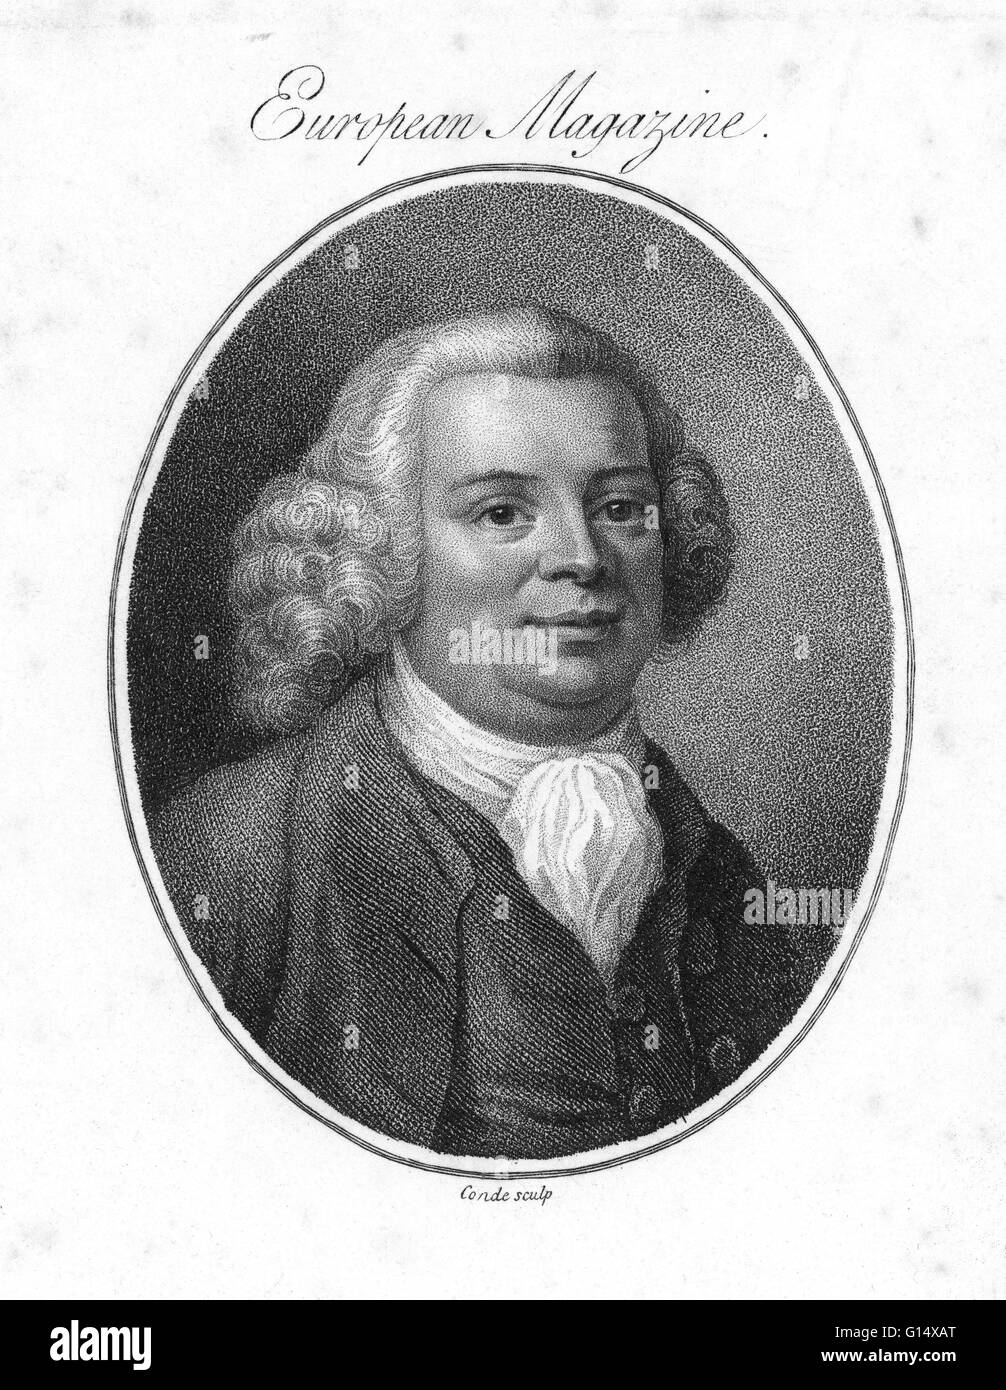 Danielle James (1716 - 27 settembre 1772) era un ingegnere inglese. Egli ha ricevuto poca istruzione formale ma è stato istruito a casa da sua madre. Egli fu apprendista di un millwright e presto ha dimostrato abilità eccezionale e capacità e ha stabilito velocemente una repu Foto Stock